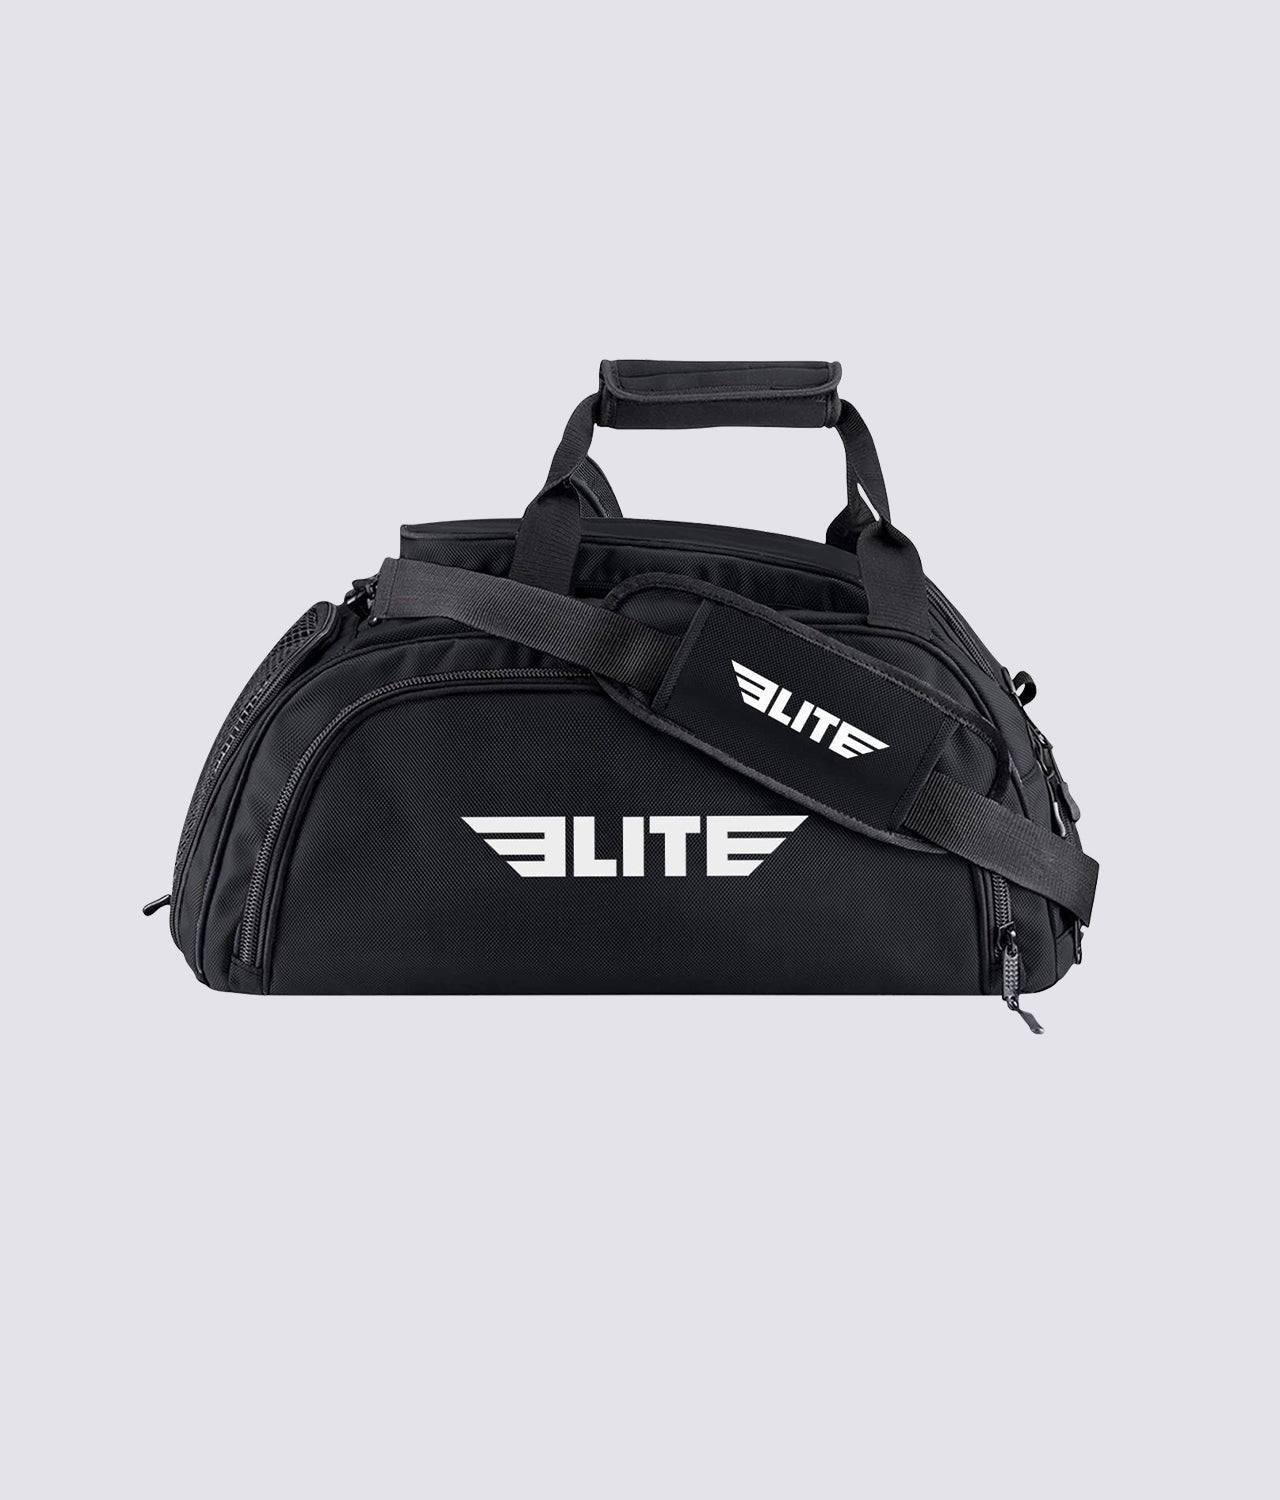 Elite Sports Warrior Black Large Duffel Training Gear Gym Bag